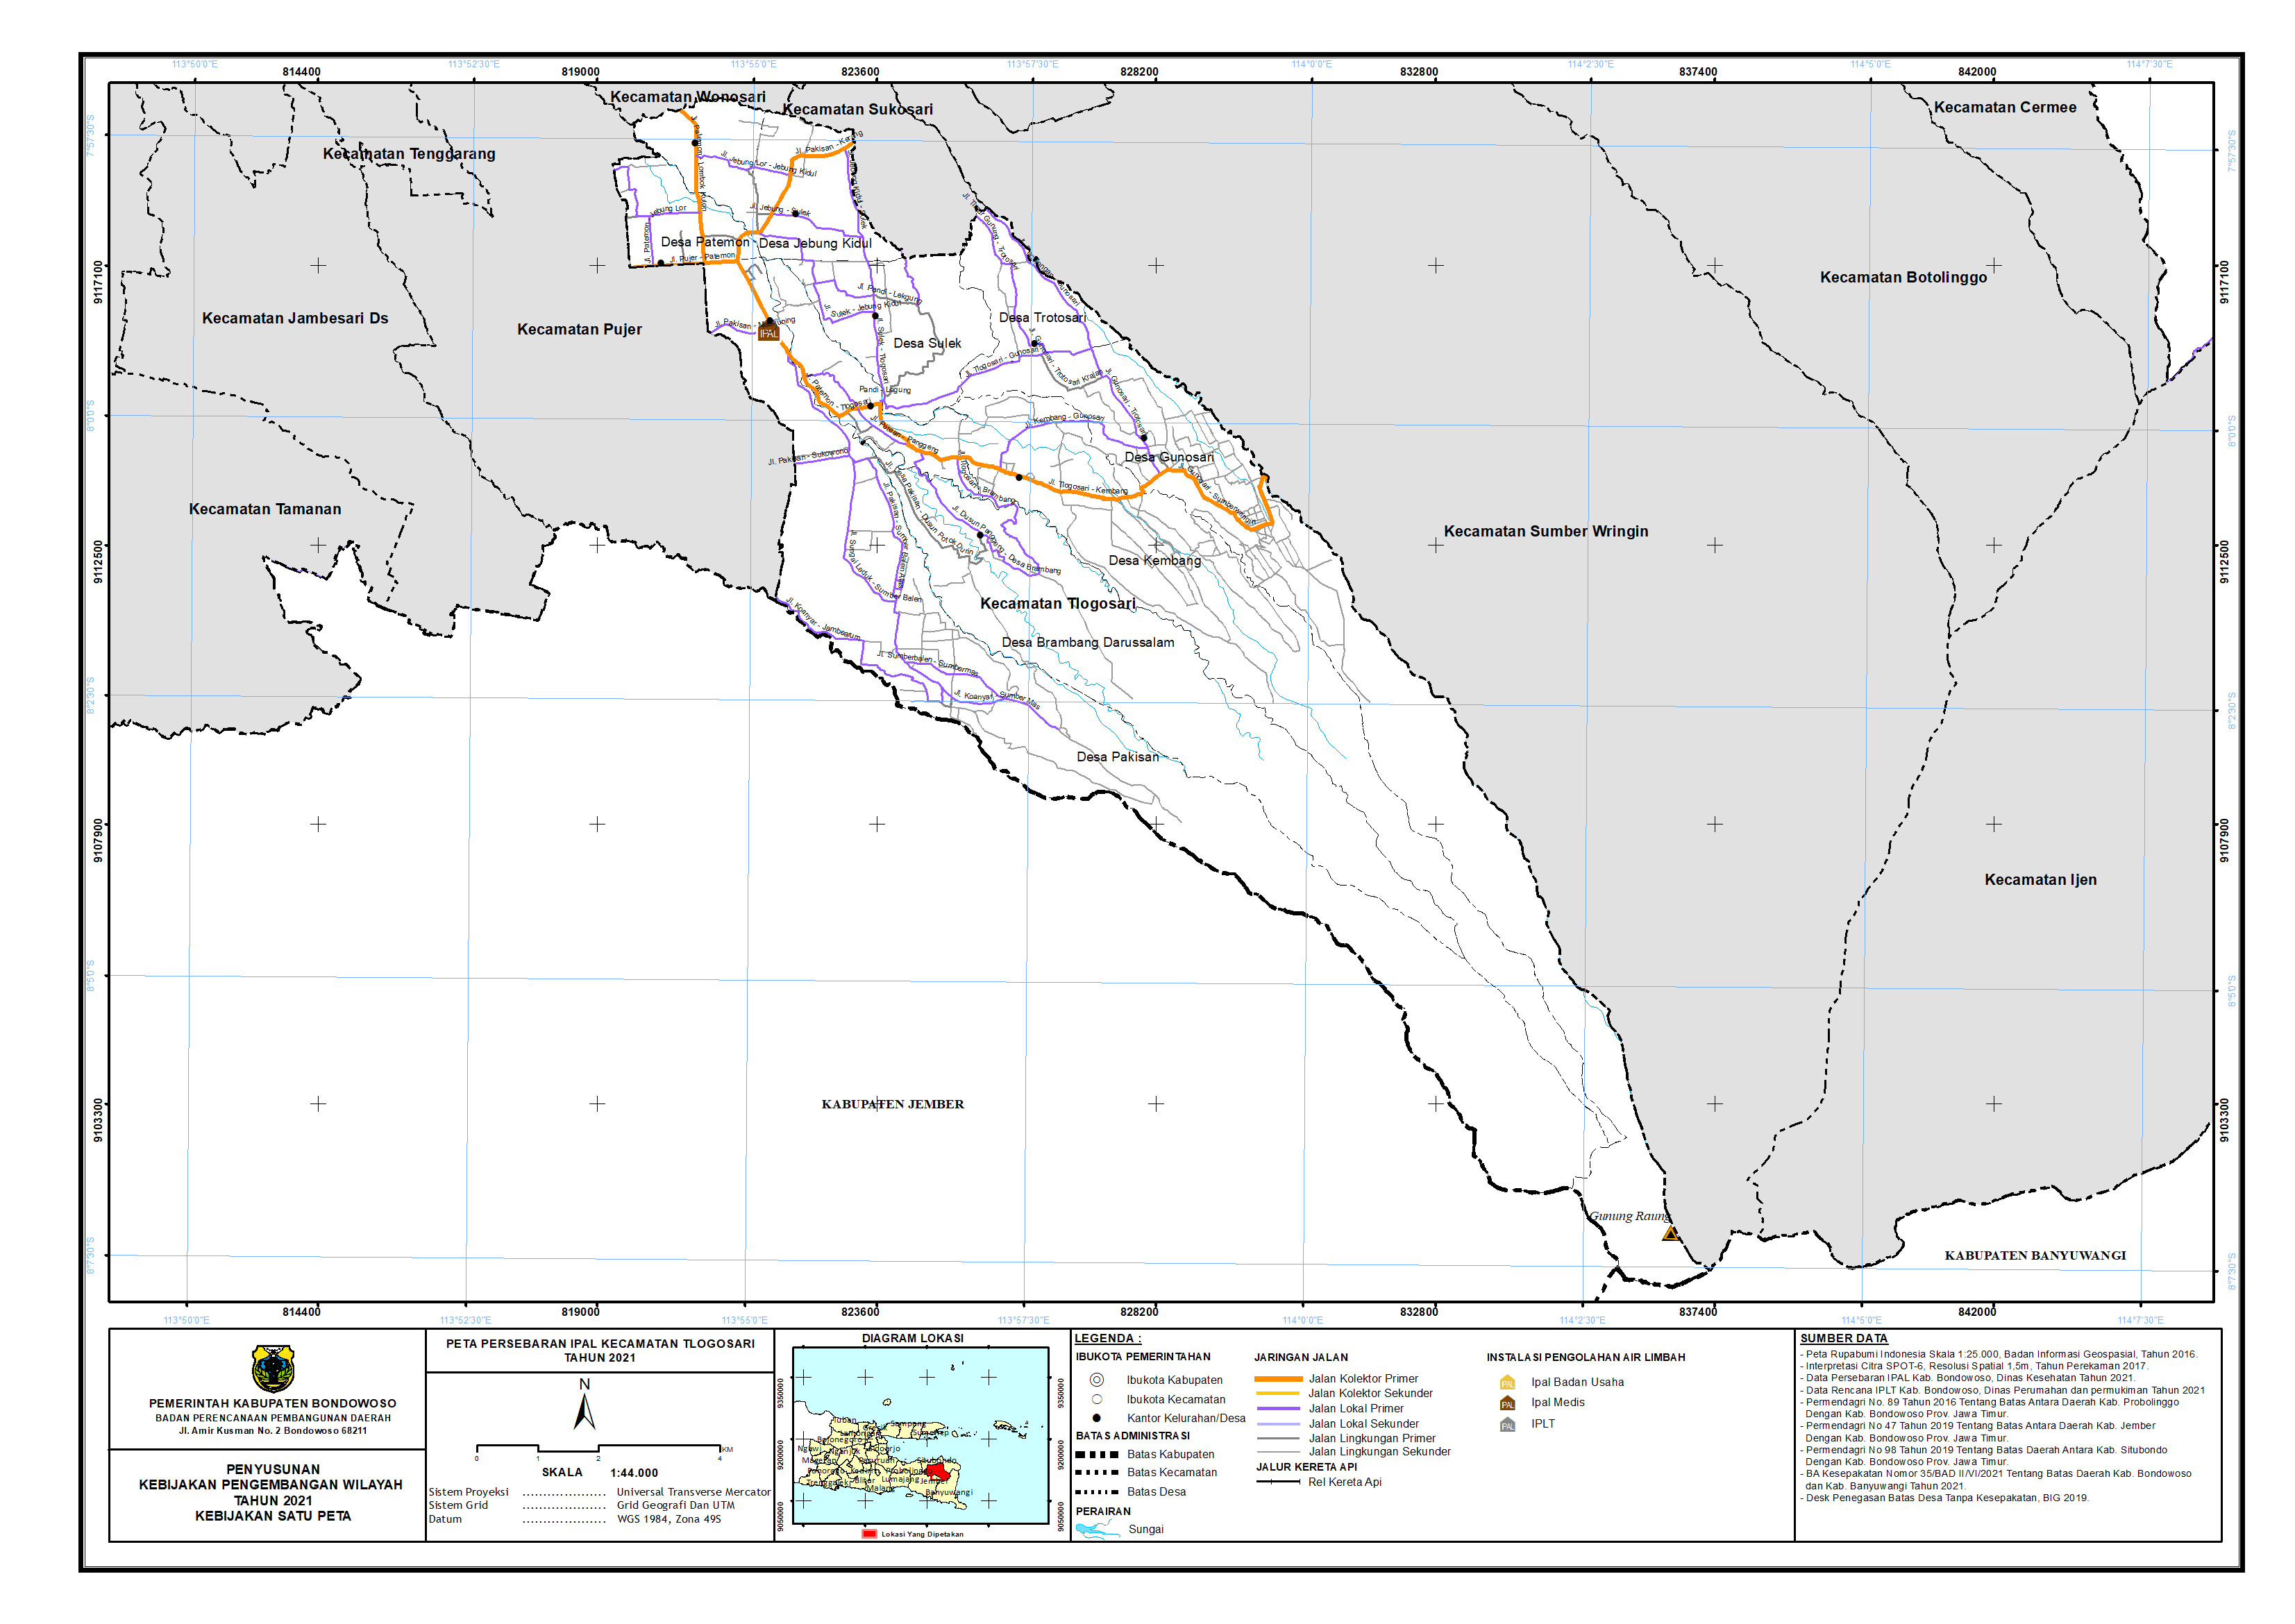 Peta Persebaran IPAL Kecamatan Tlogosari.png